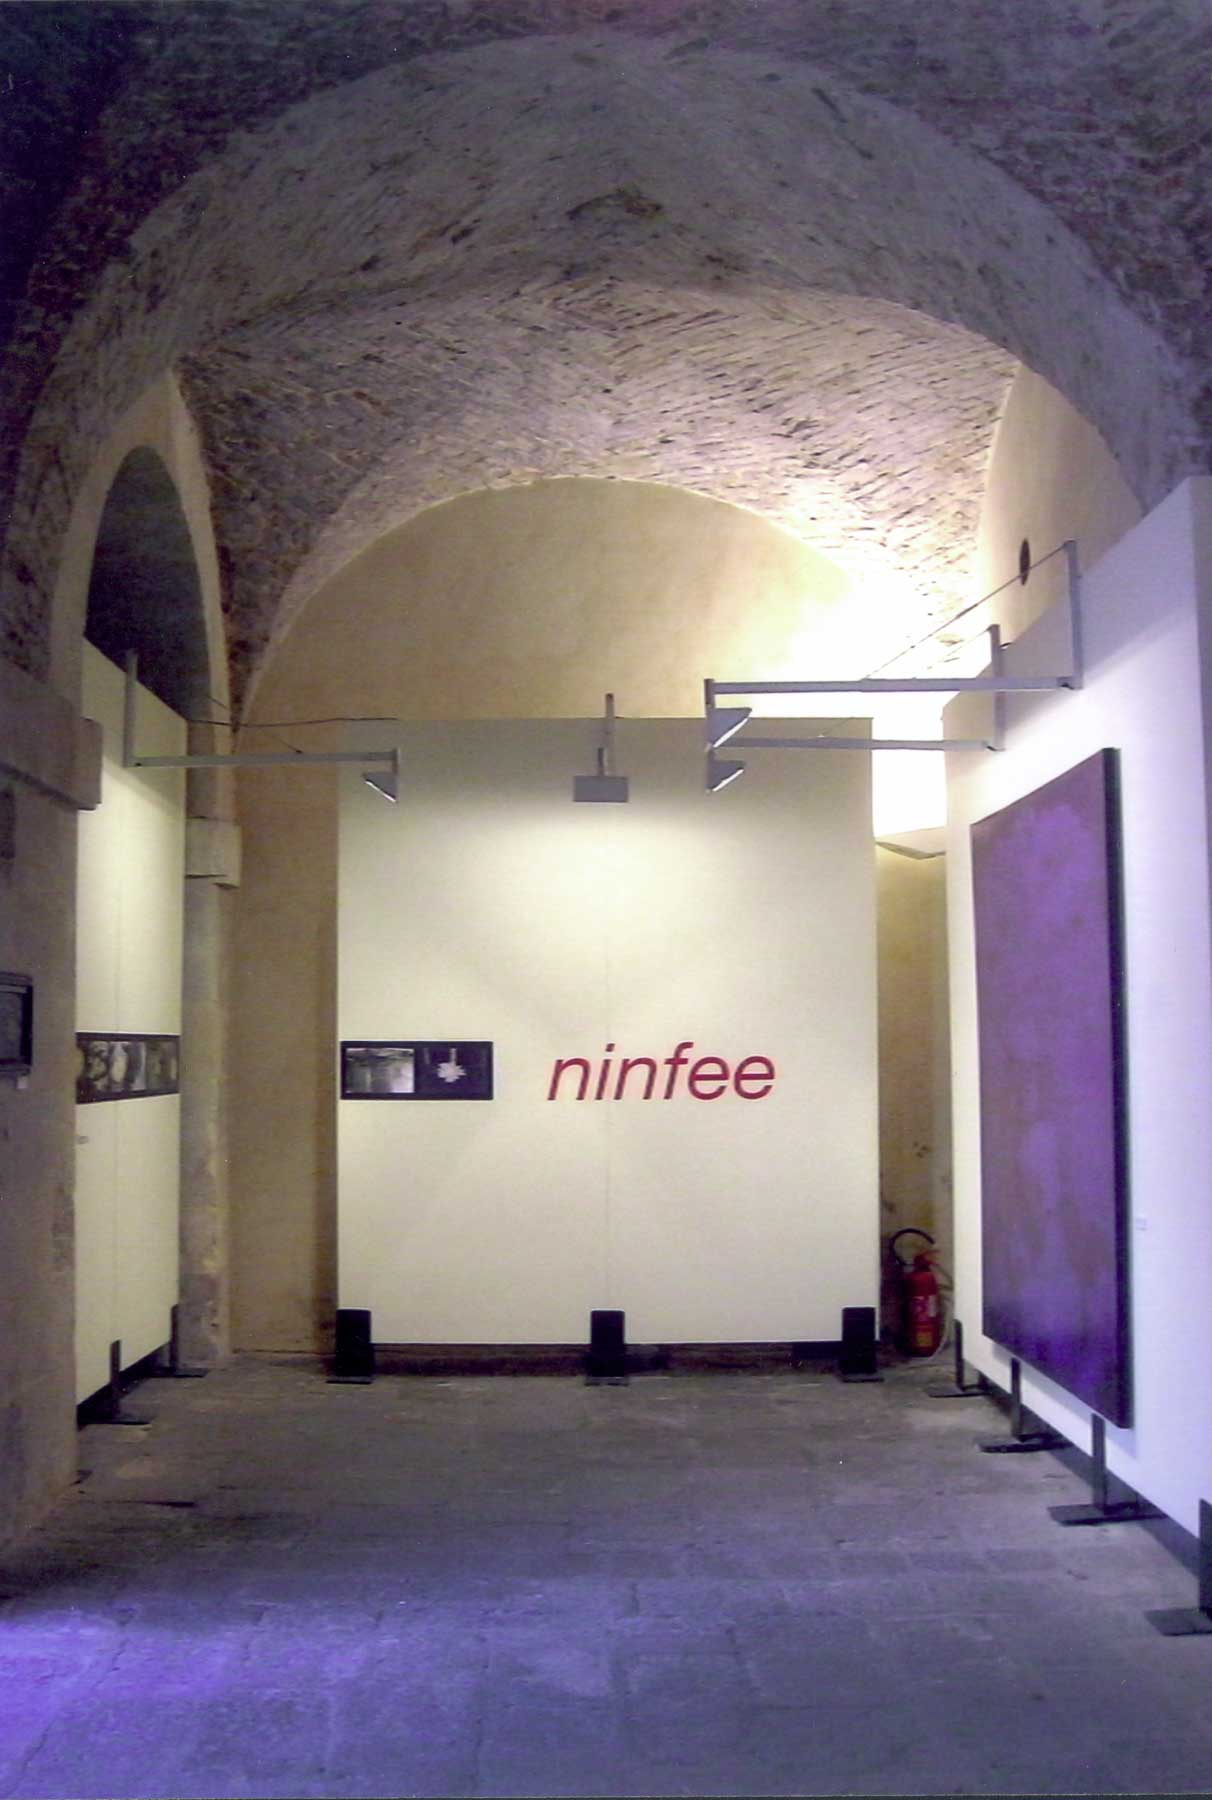 cristina-cocco-installazione-arte-ninfee-padova-2006-palazzo-moroni-scuderie